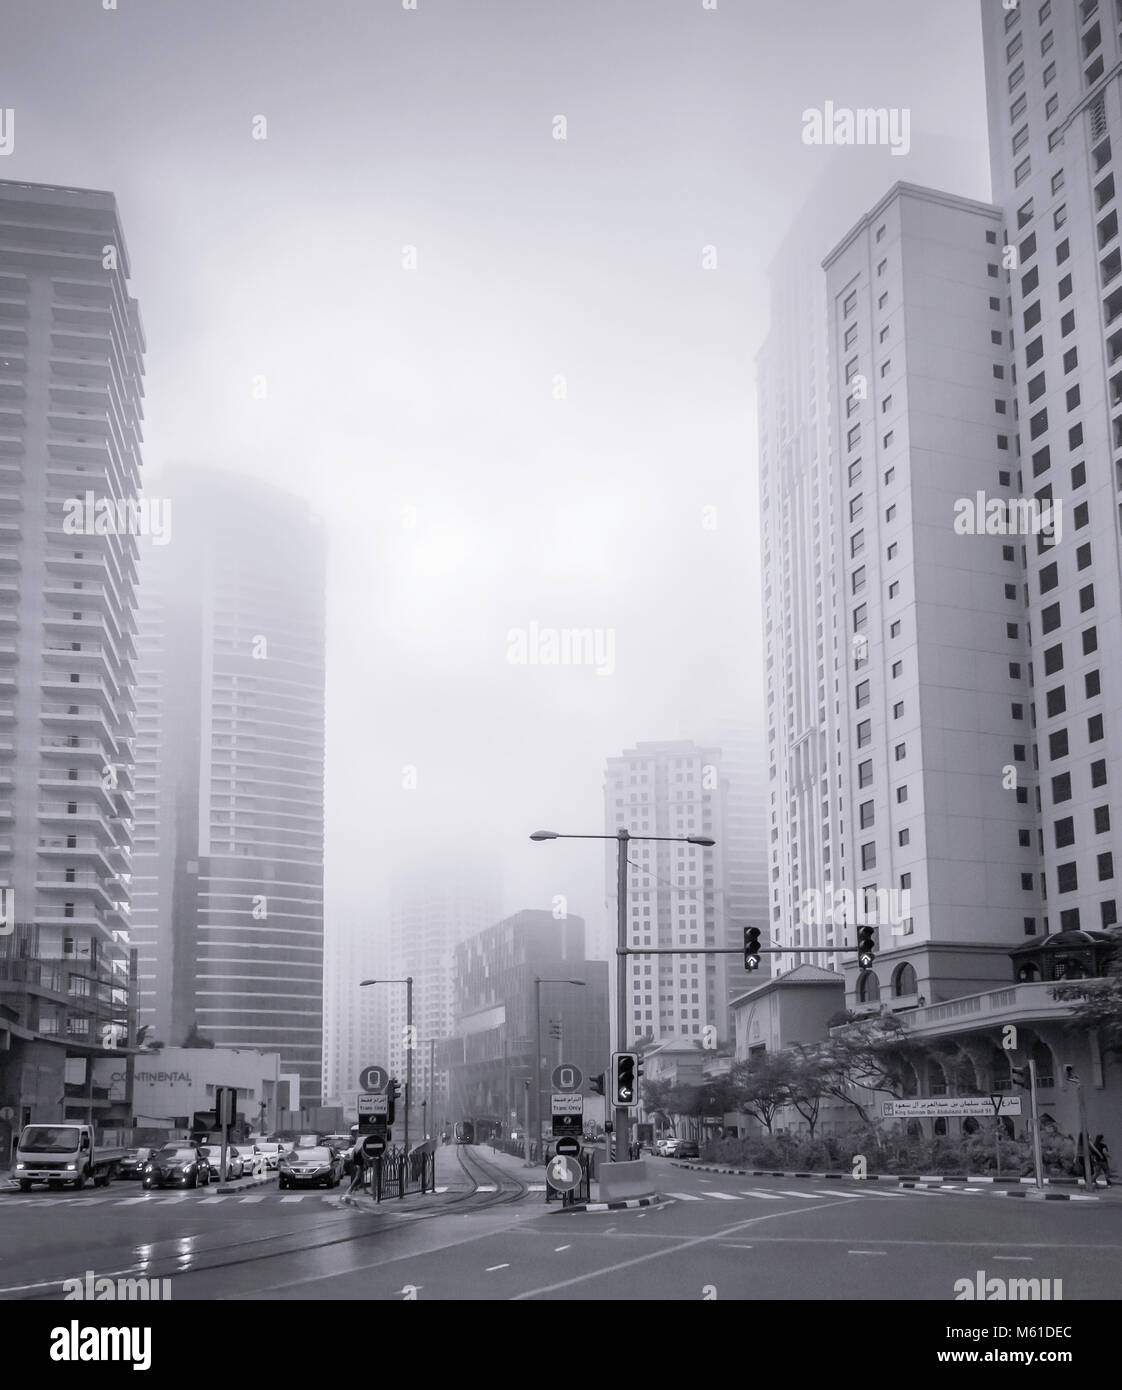 Una nebbiosa città in scena a Dubai, Emirati Arabi Uniti, Medio Oriente. Foto Stock